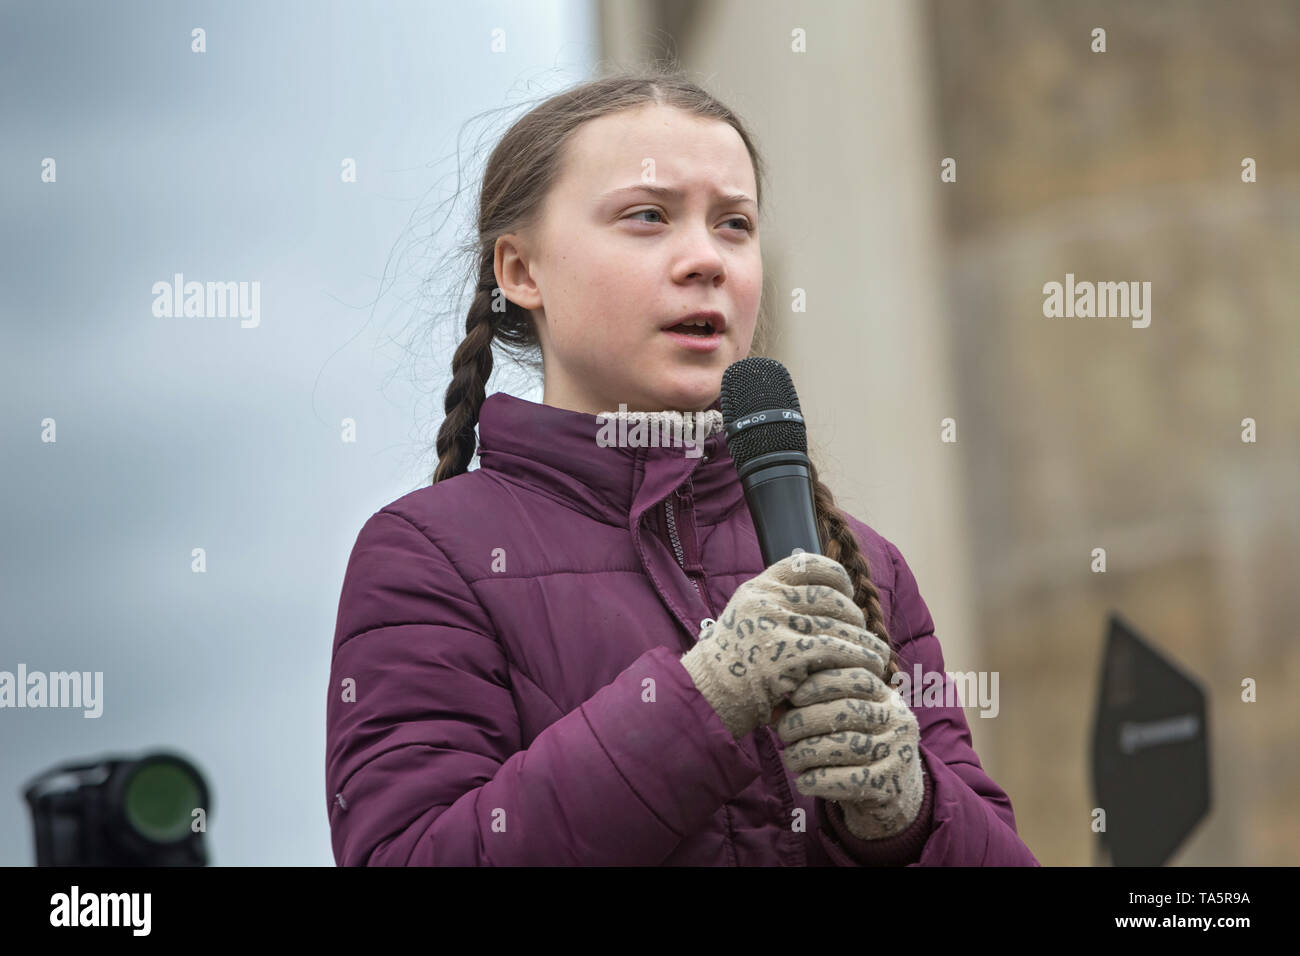 29.03.2019, Berlin, Berlin, Deutschland - Die schwedische Klimaschutz Aktivistin Greta Thunberg spricht an der FridaysForFuture Demonstration an der Marke Stockfoto